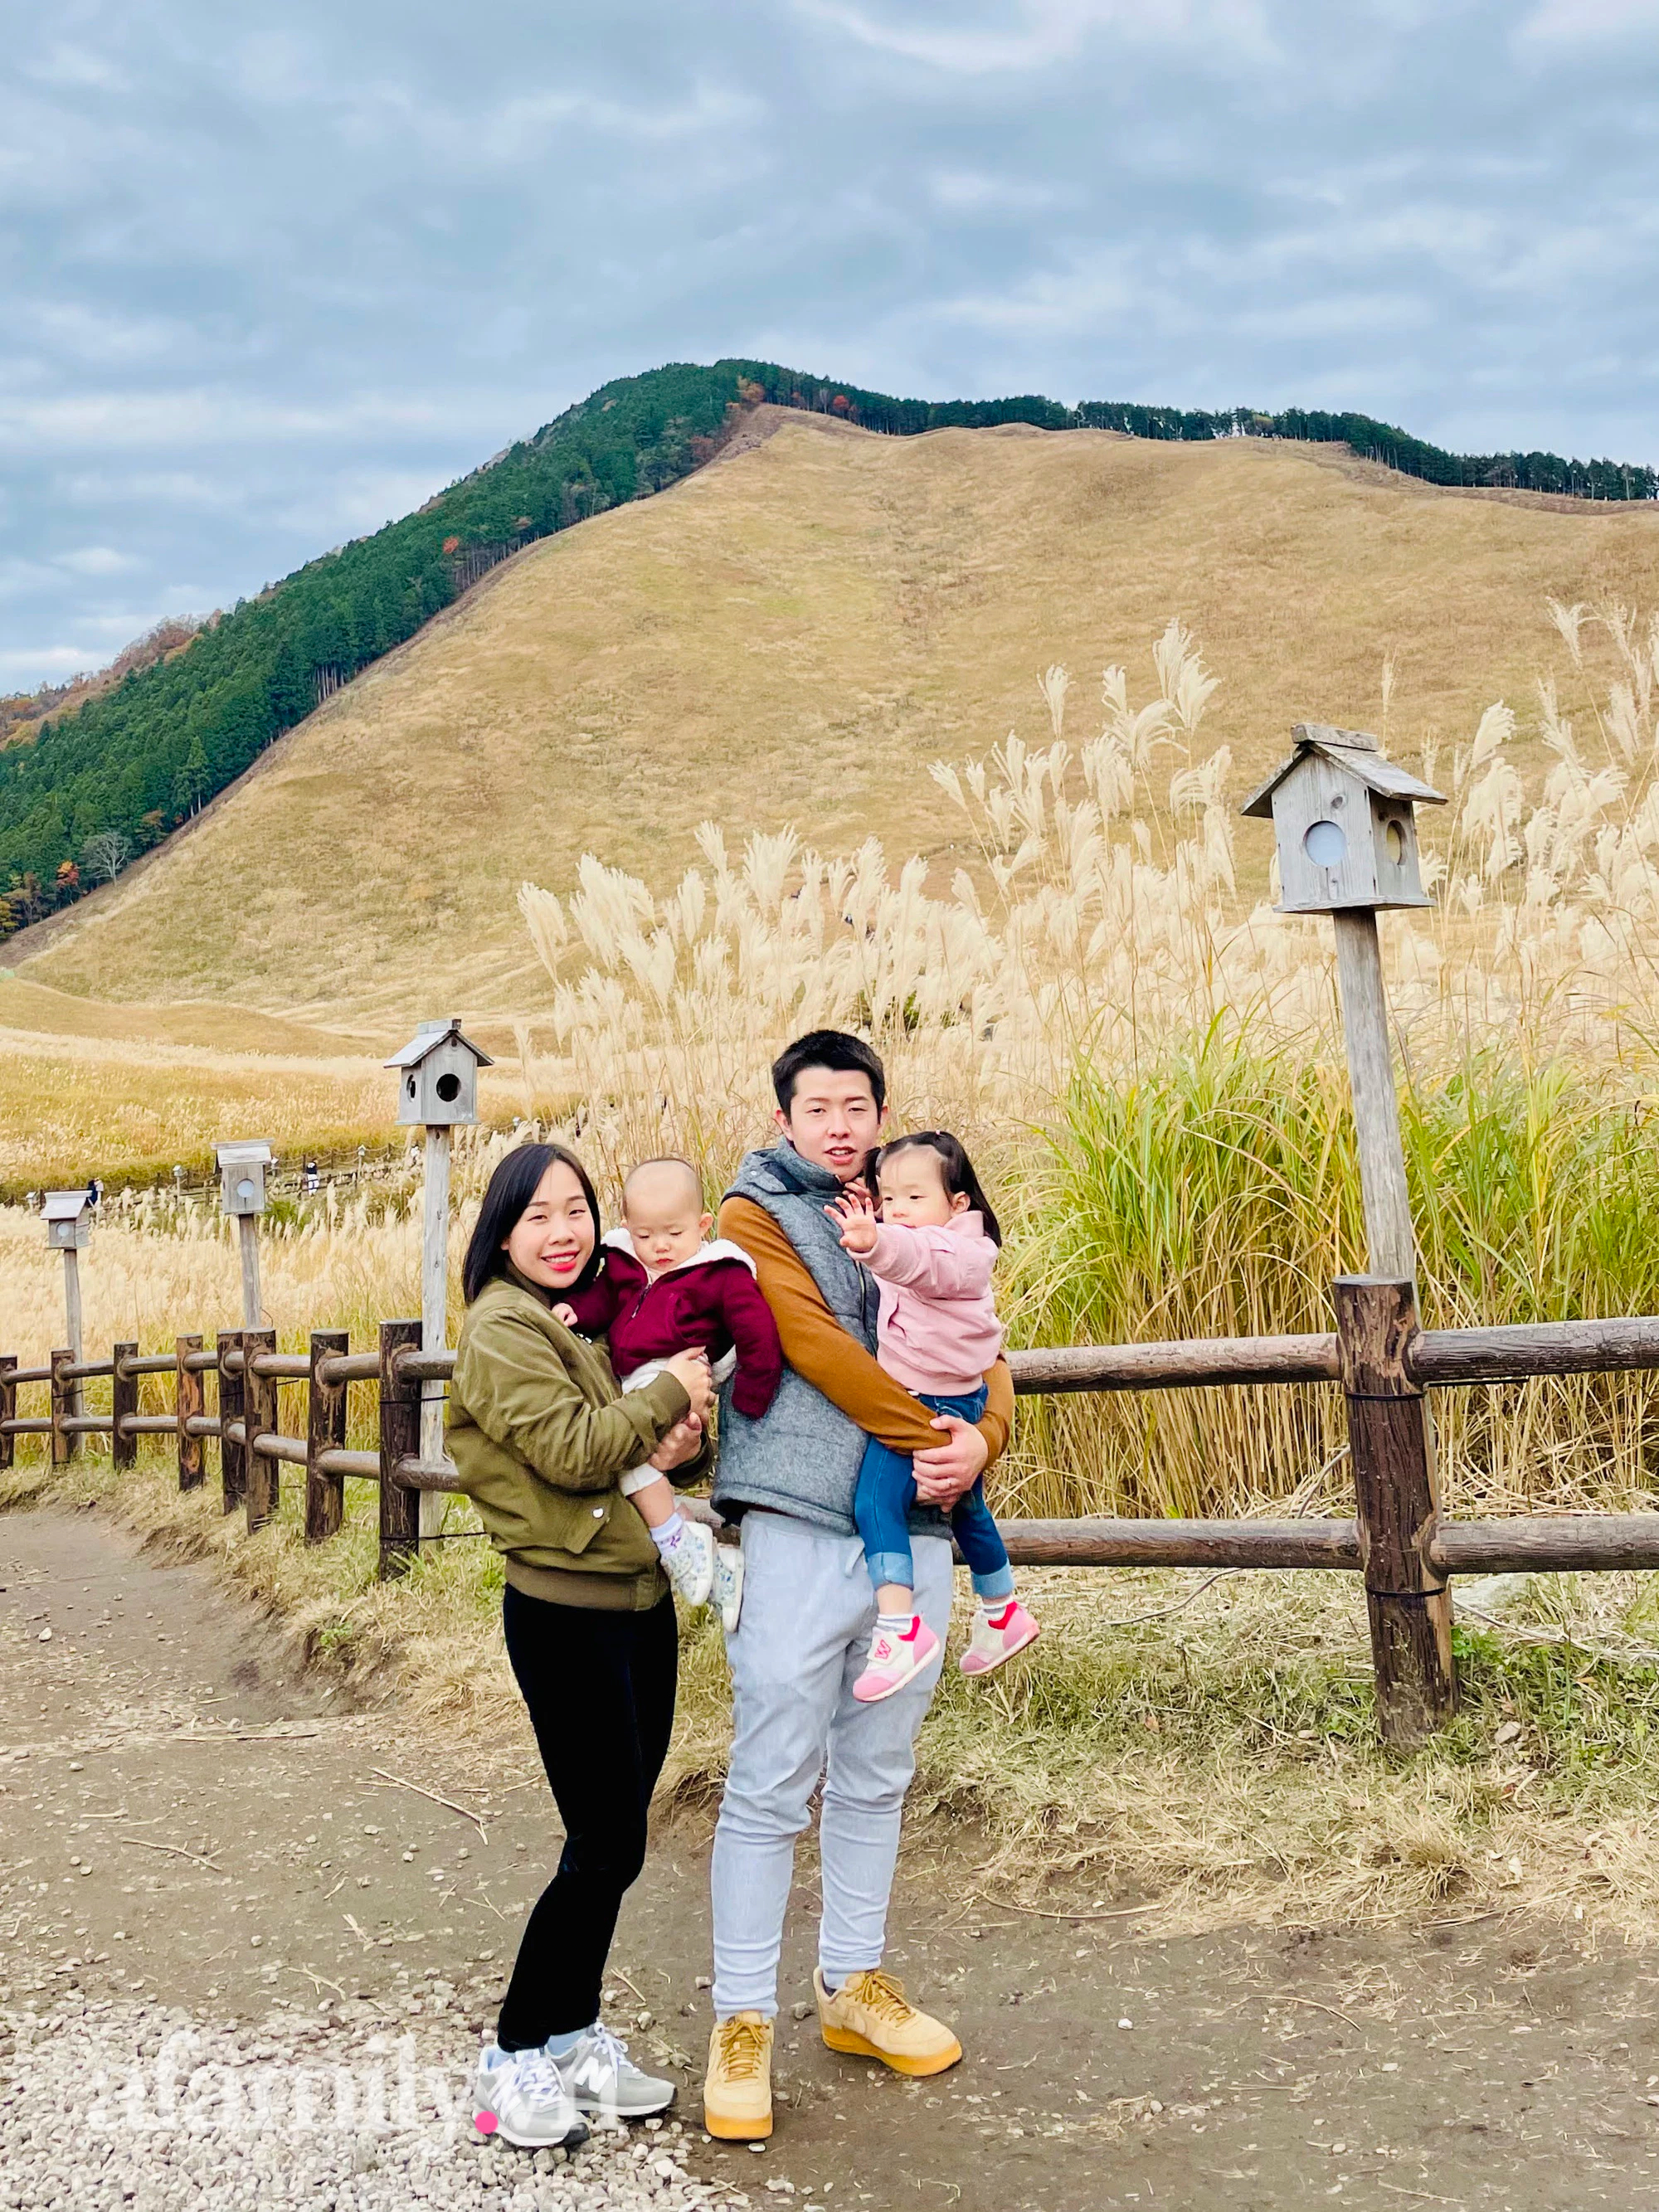 Trải lòng của hot YouTuber làm mẹ full-time tại Nhật, lựa chọn nghỉ việc để toàn tâm toàn ý chăm sóc và nuôi dạy 2 con gái - Ảnh 5.